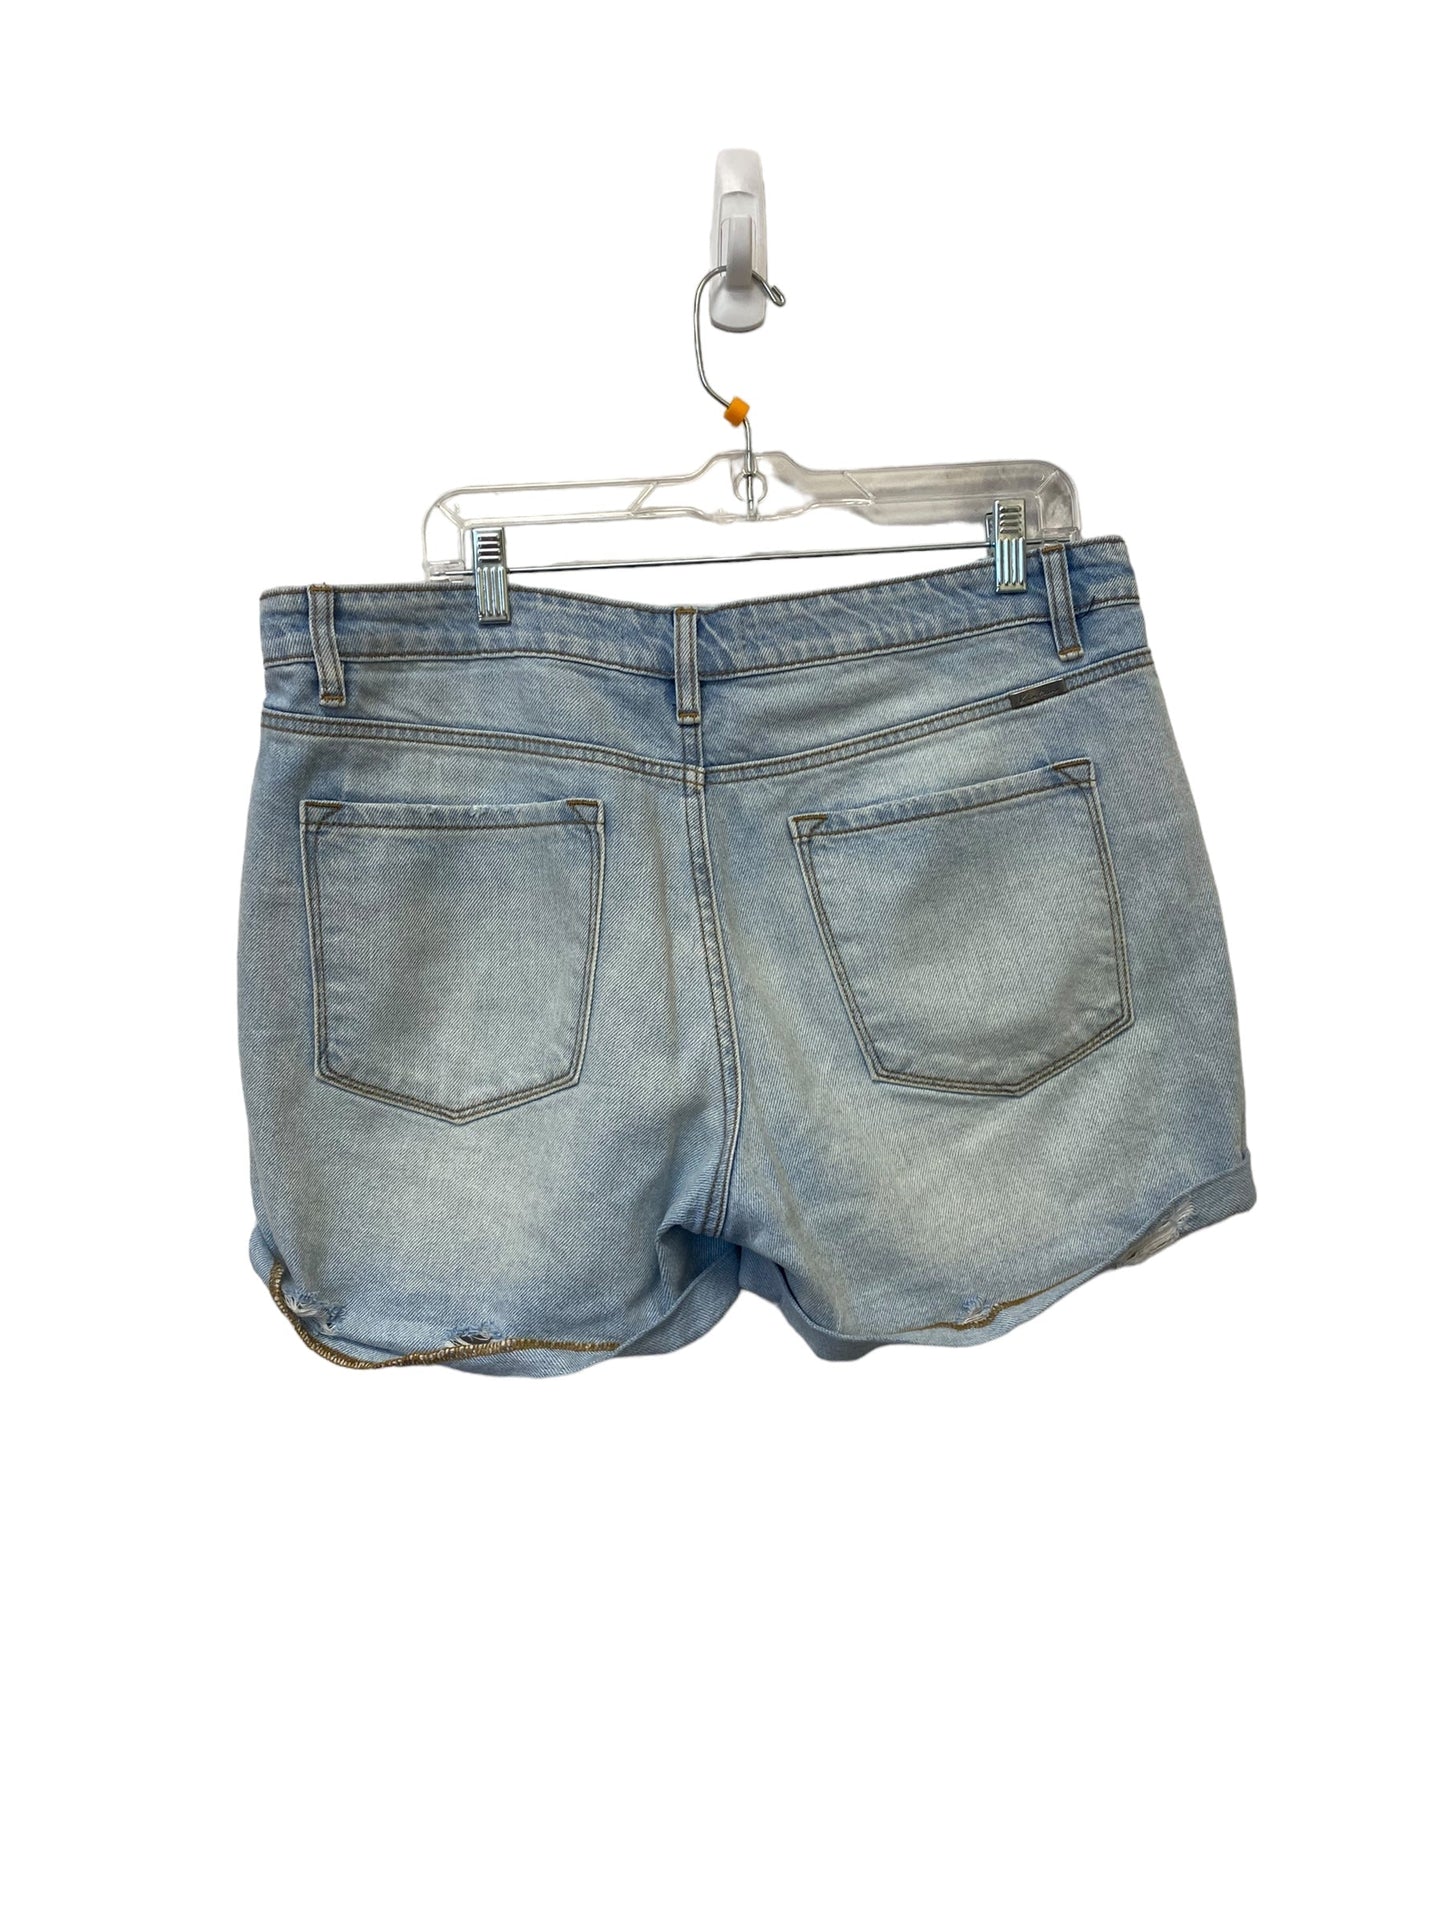 Blue Denim Shorts Kancan, Size 30